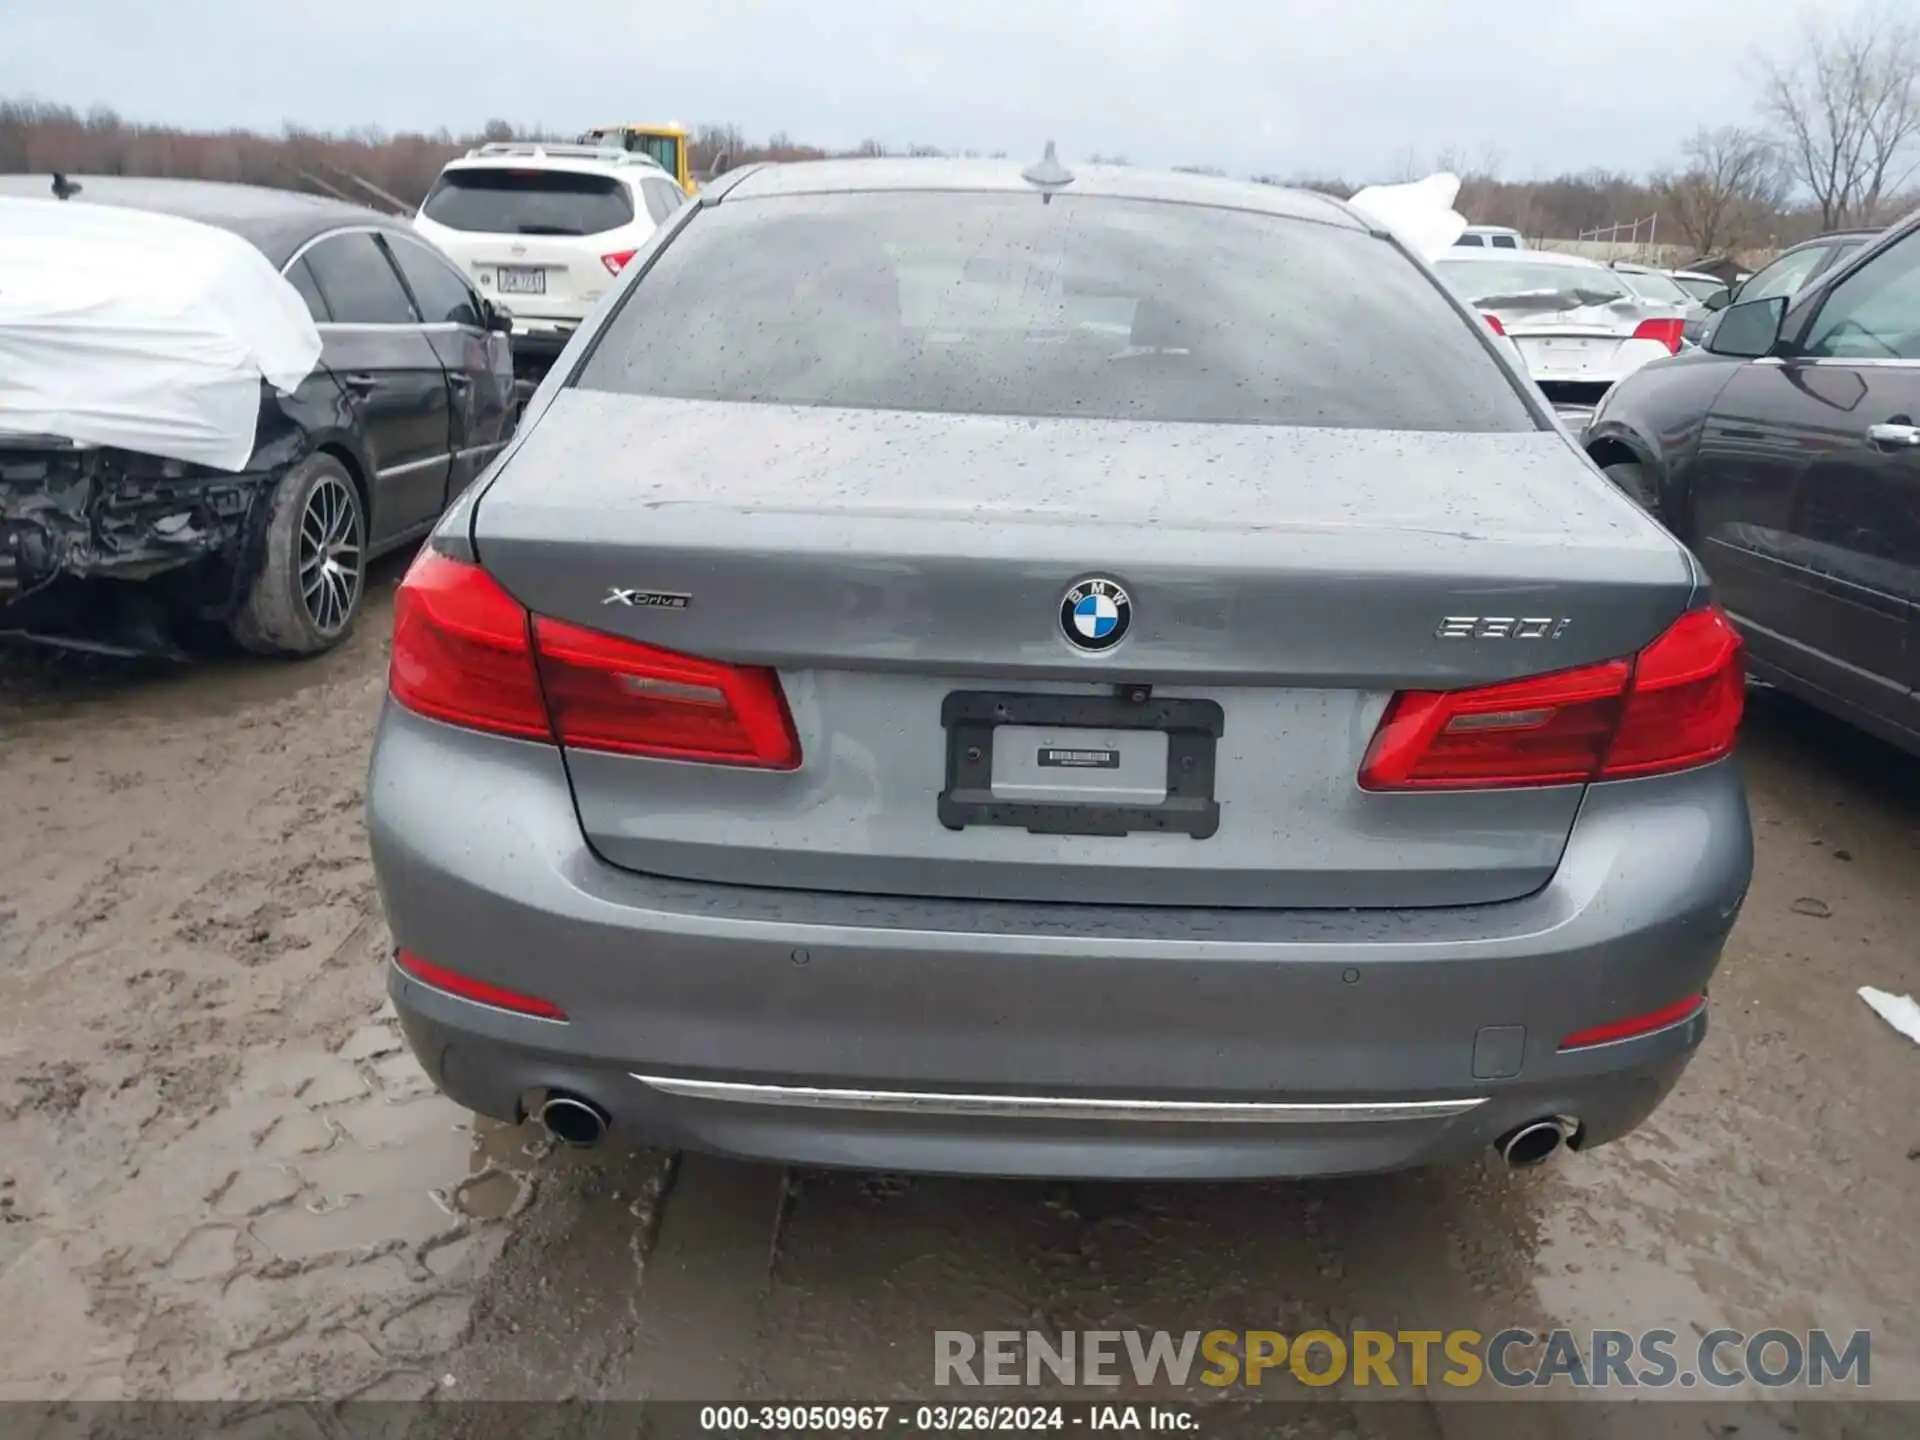 15 Photograph of a damaged car WBAJR7C09LWW77741 BMW 530I 2020